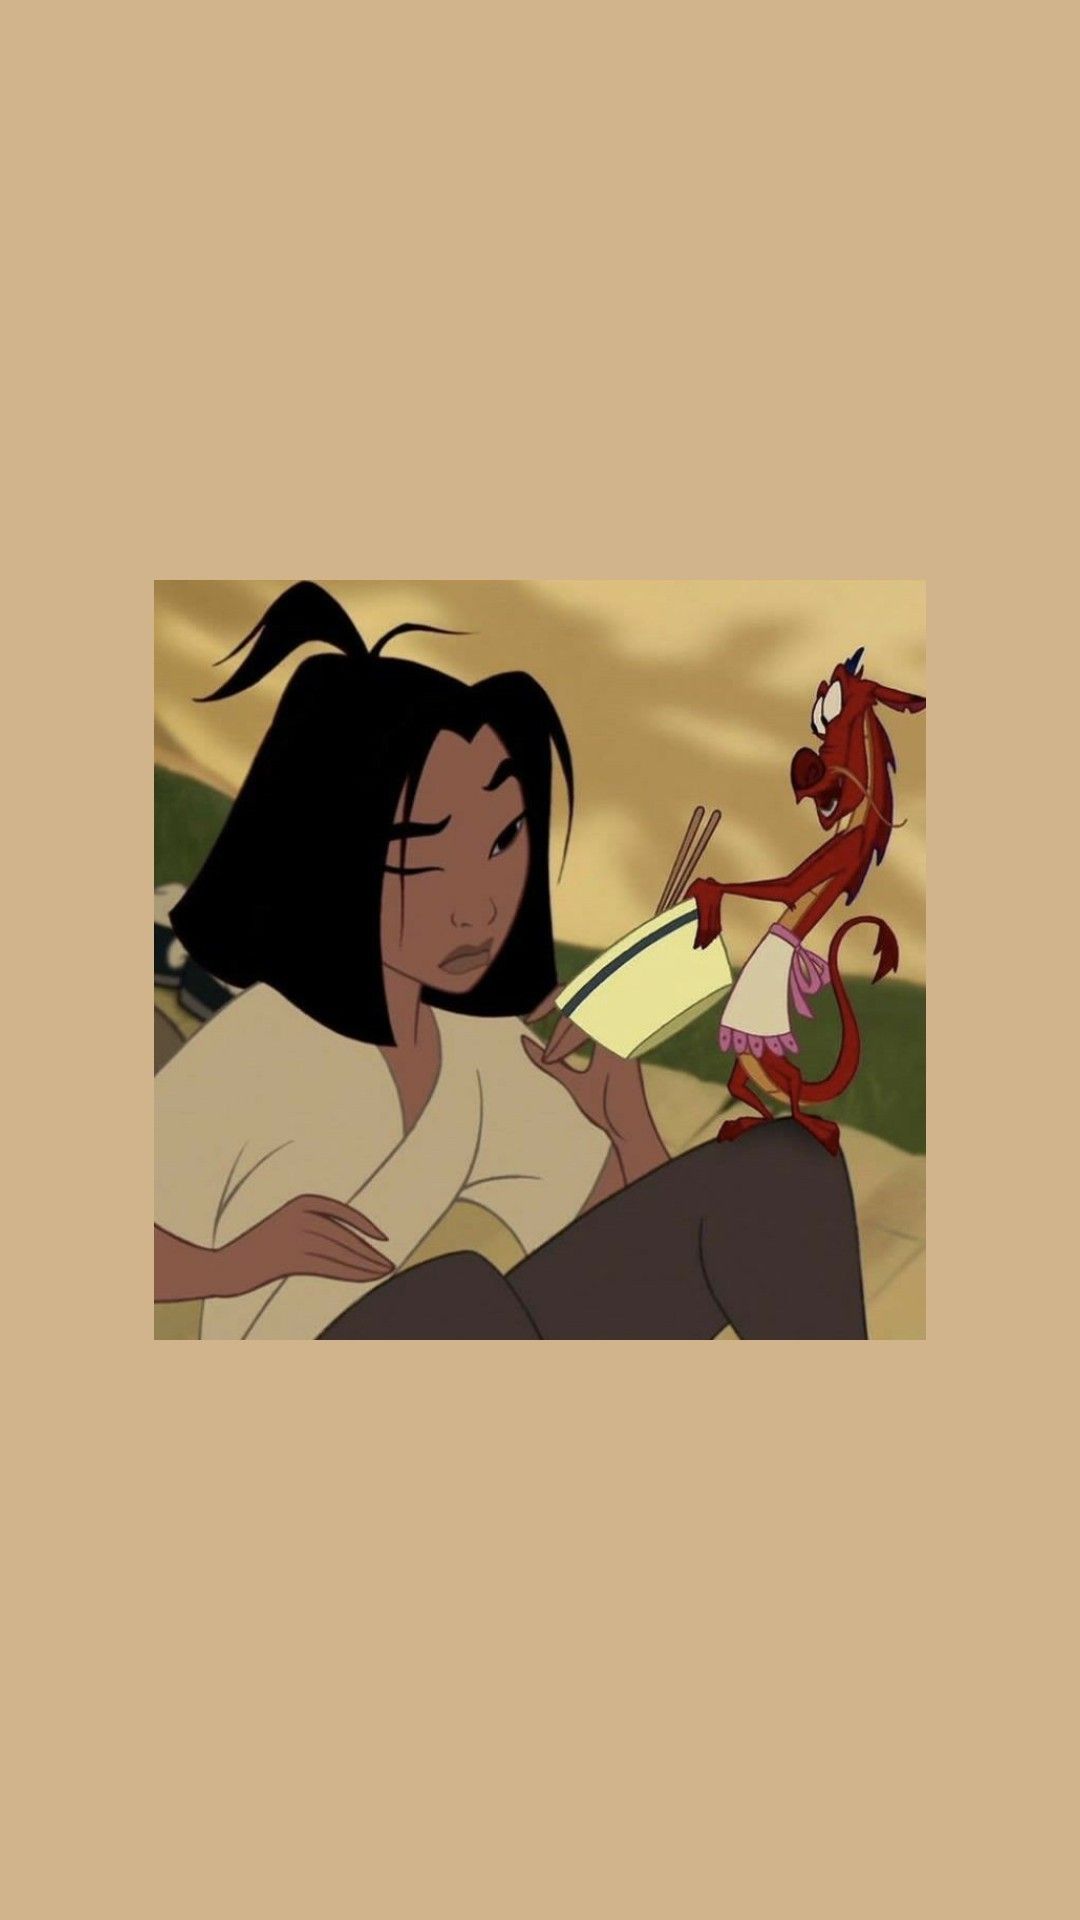 Mulan and Mushu reading a book - Mulan